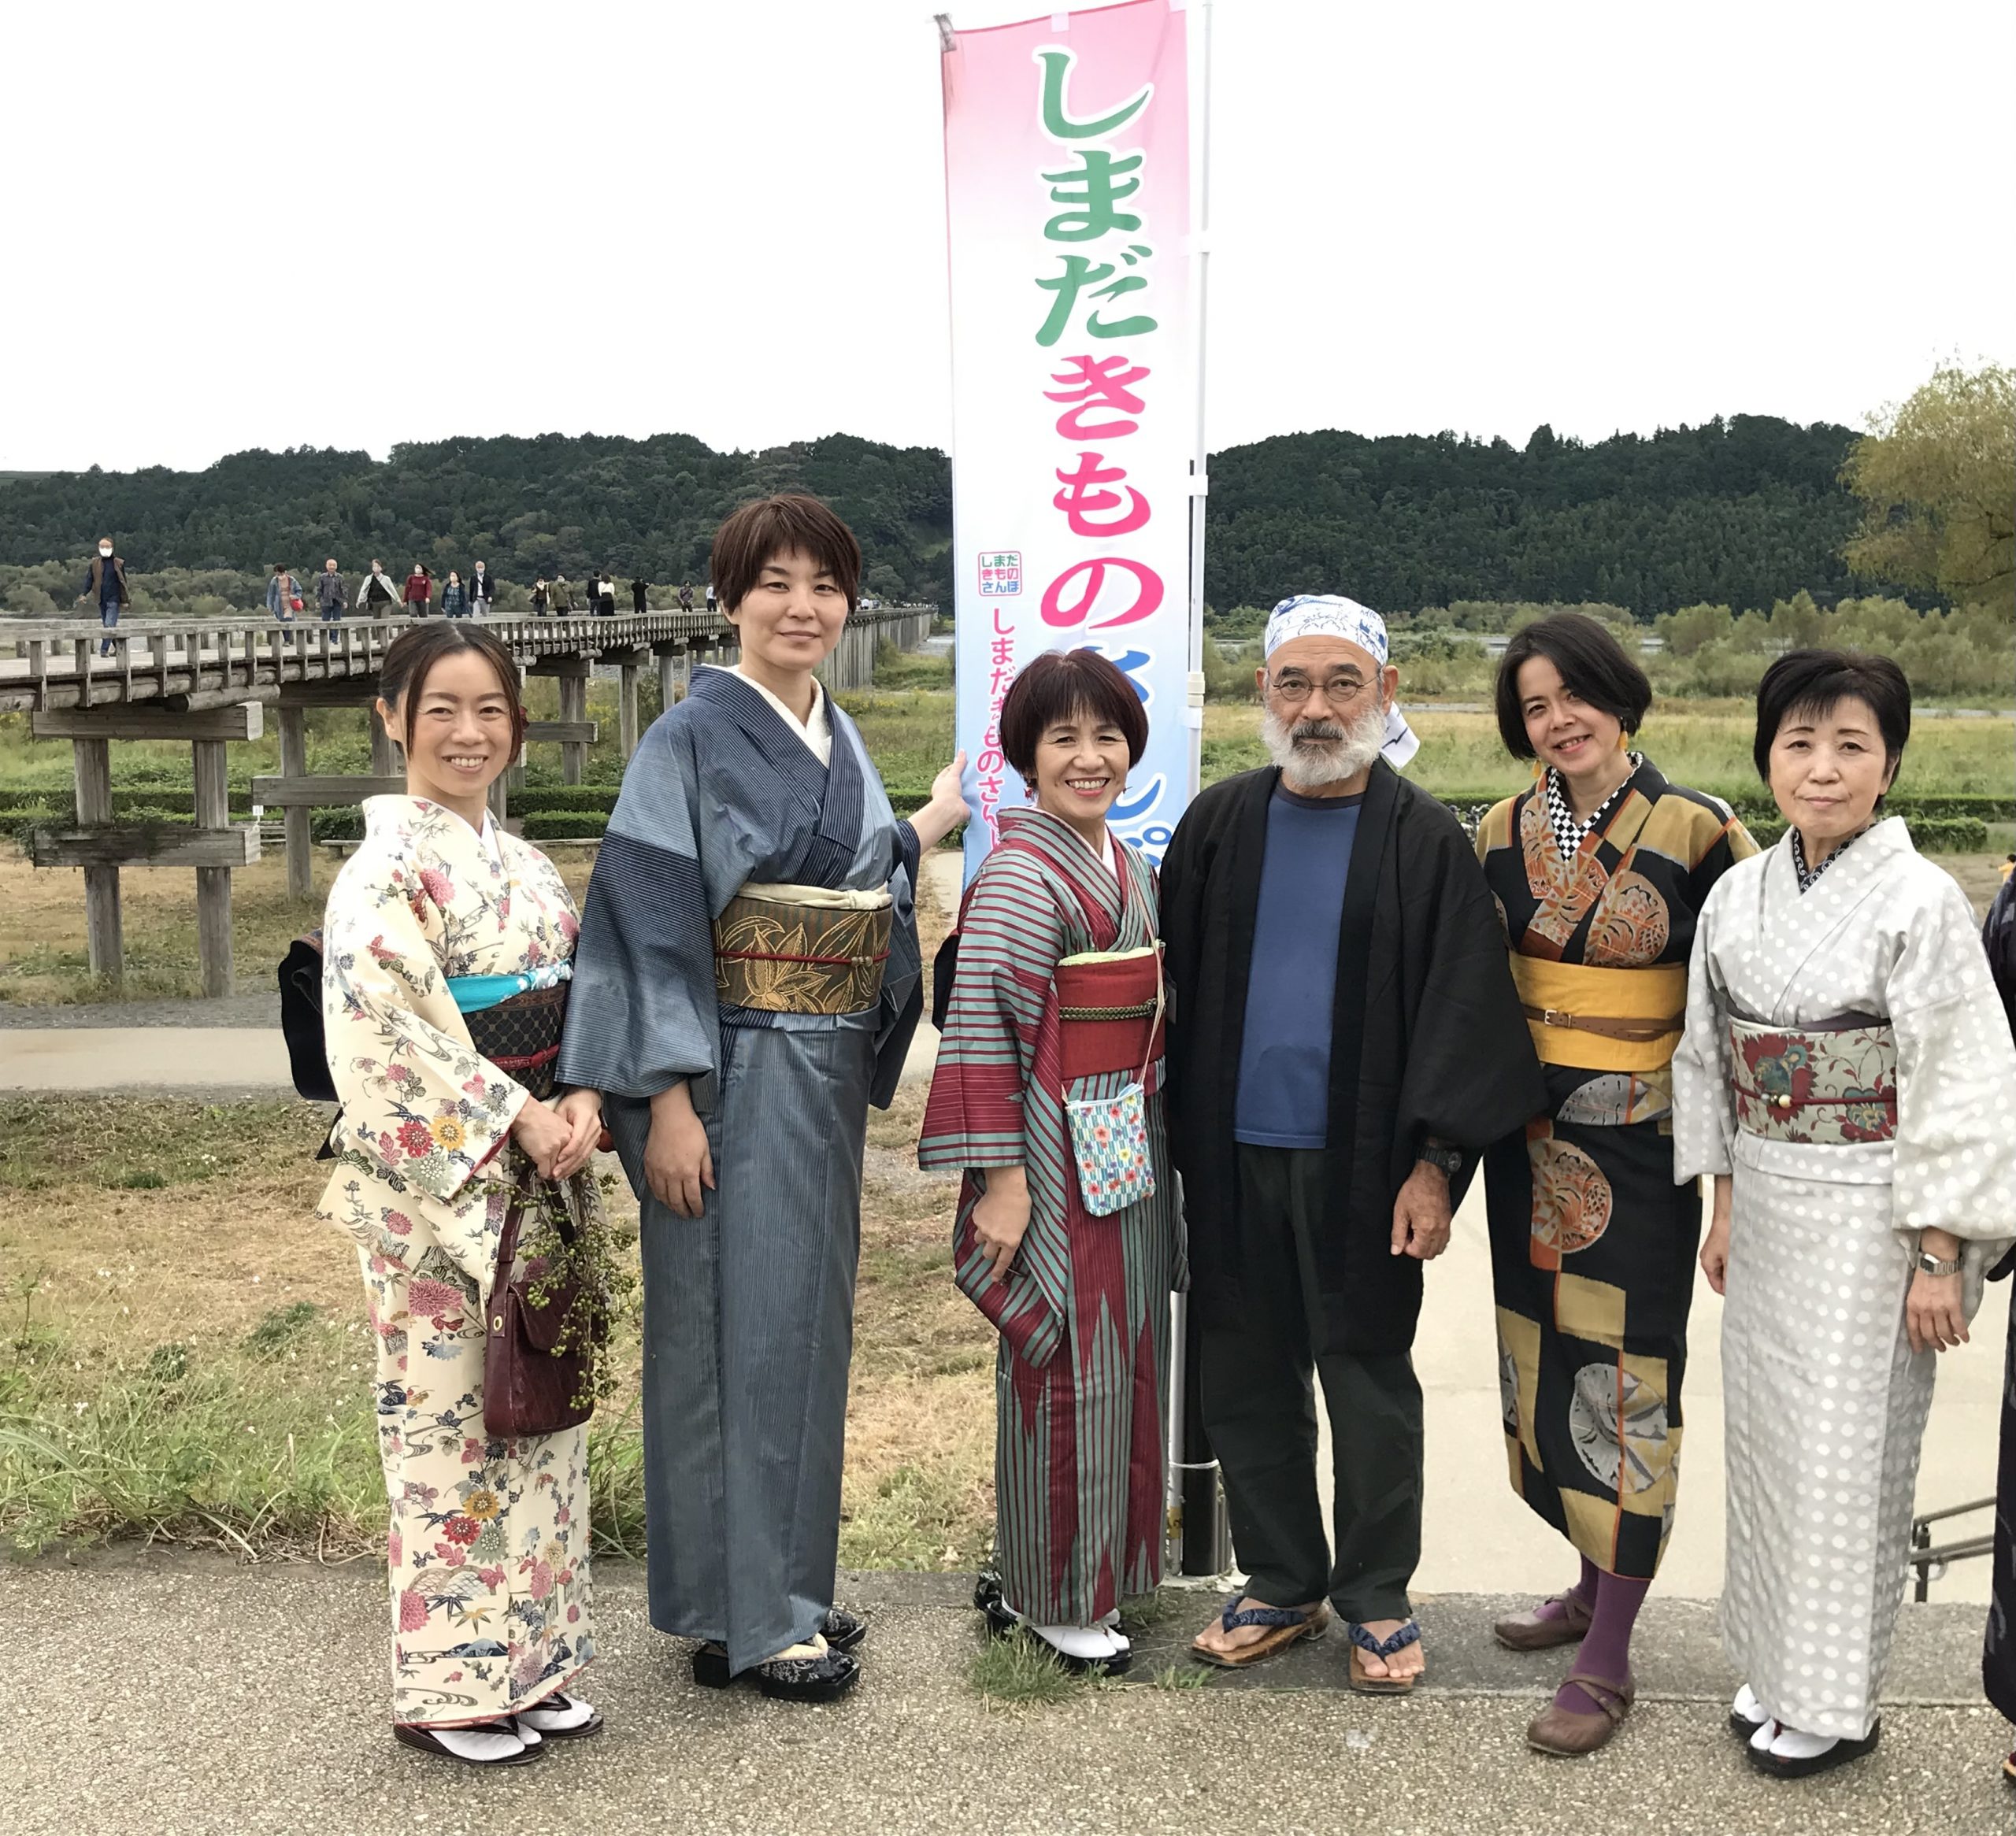 (左から3番目) 一般社団法人「しまだきものさんぽ」代表理事・小澤京子さん